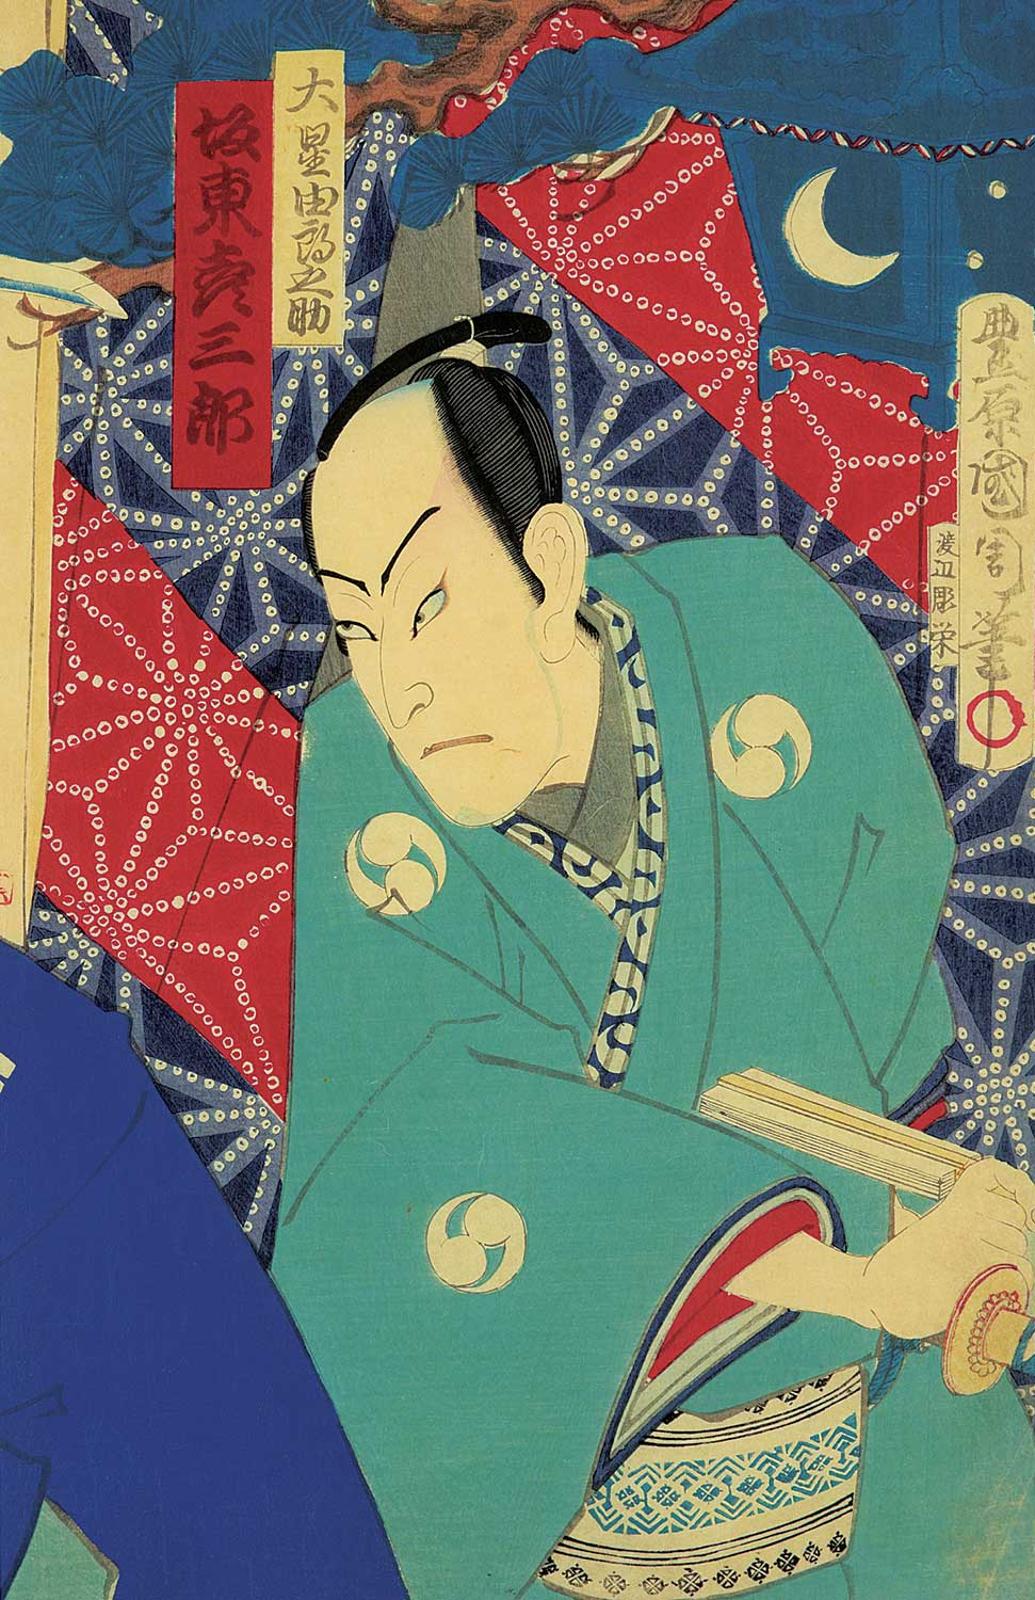 Utagawa Kuniyoshi (1979-1861) - Actor